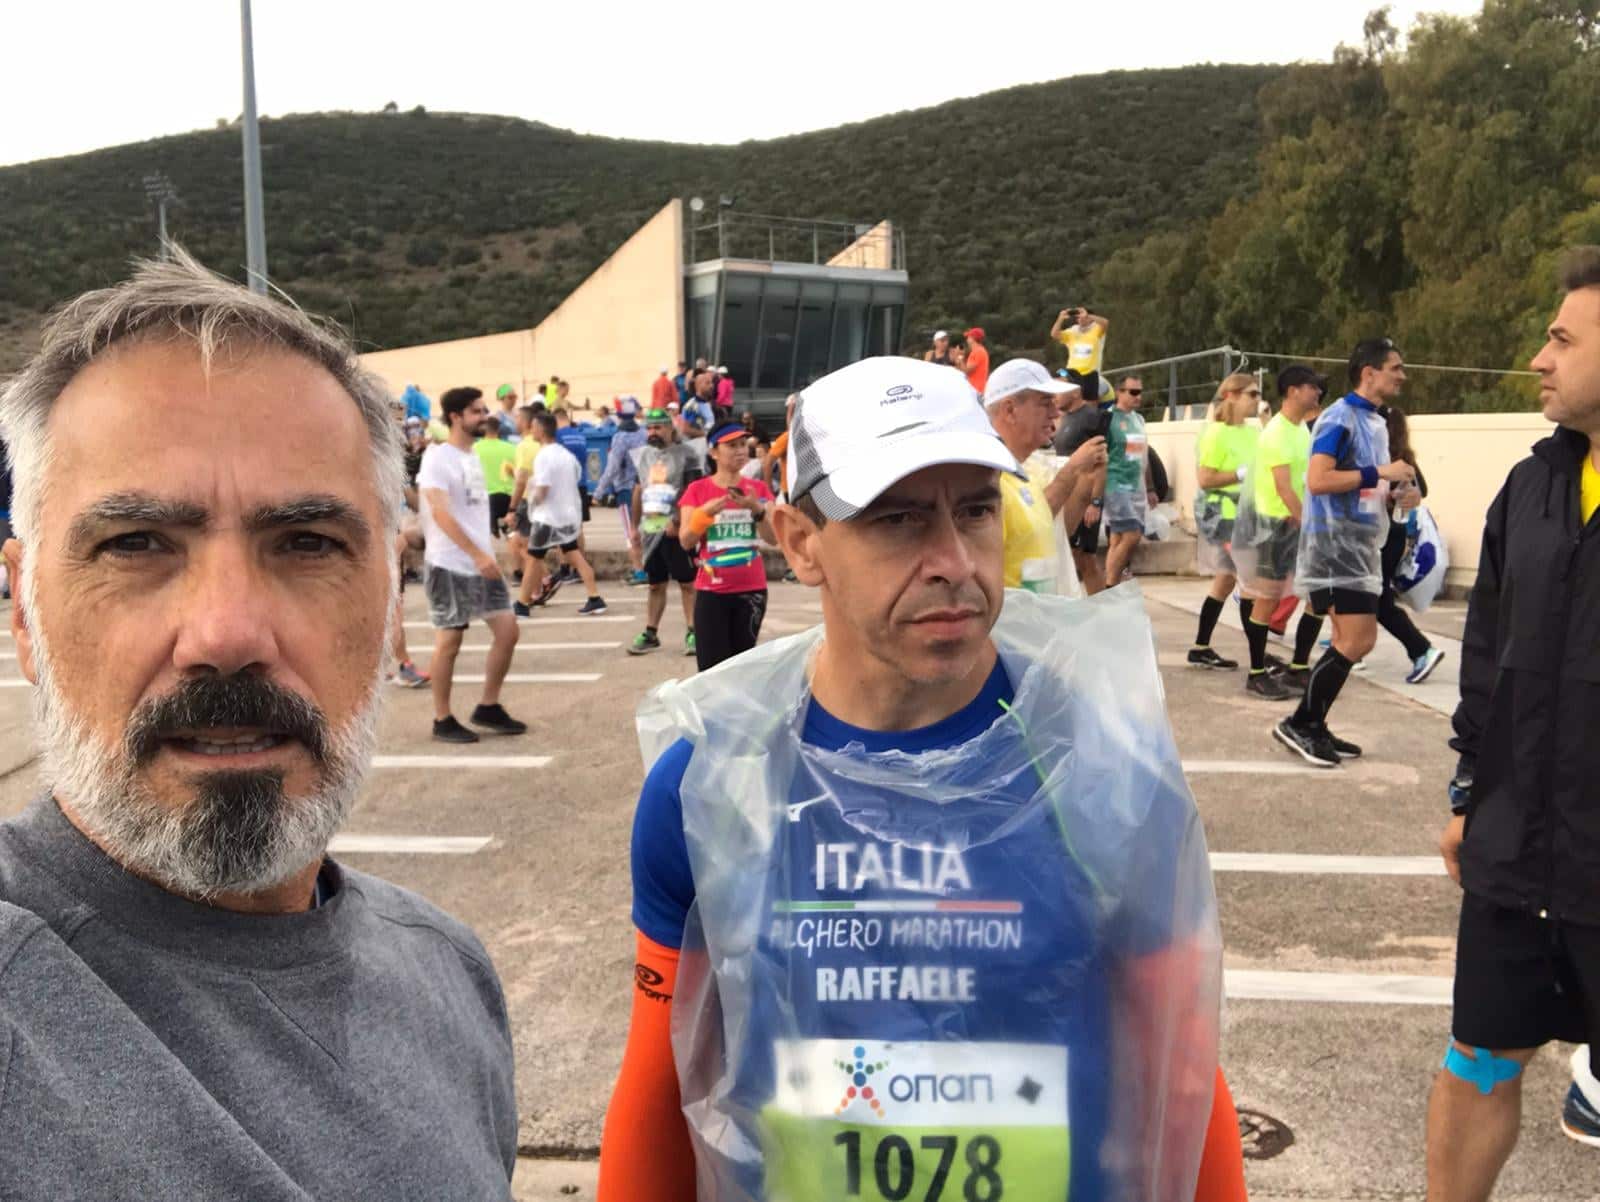 Alghero all'epica maratona di Atene - Alghero News